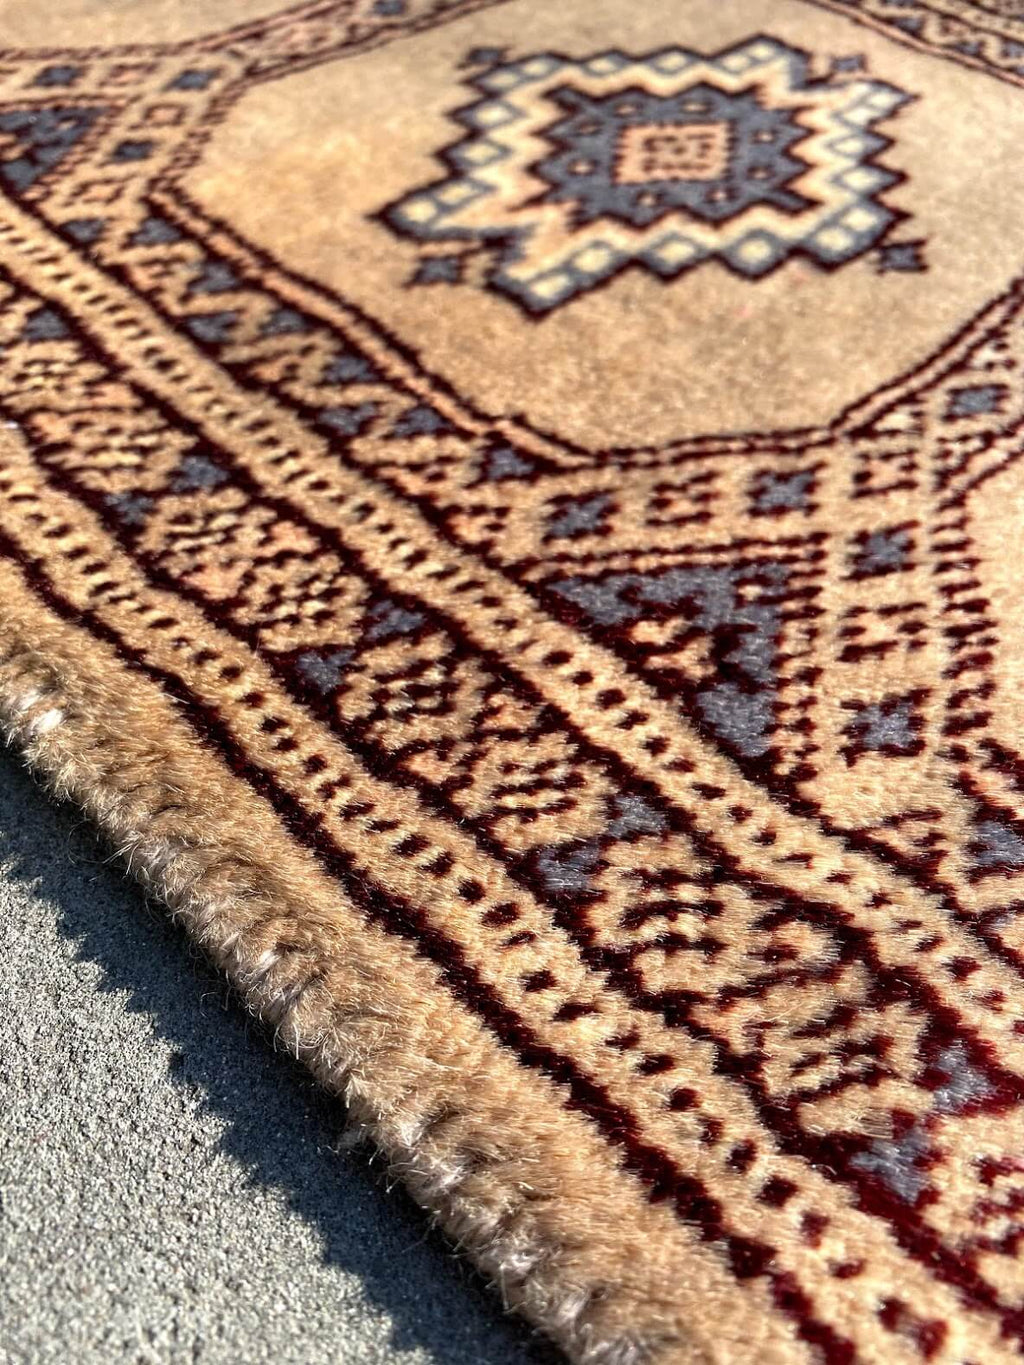 特注製作 廊下敷きパキスタン手織り絨毯 ランナー size:180×64cm 高